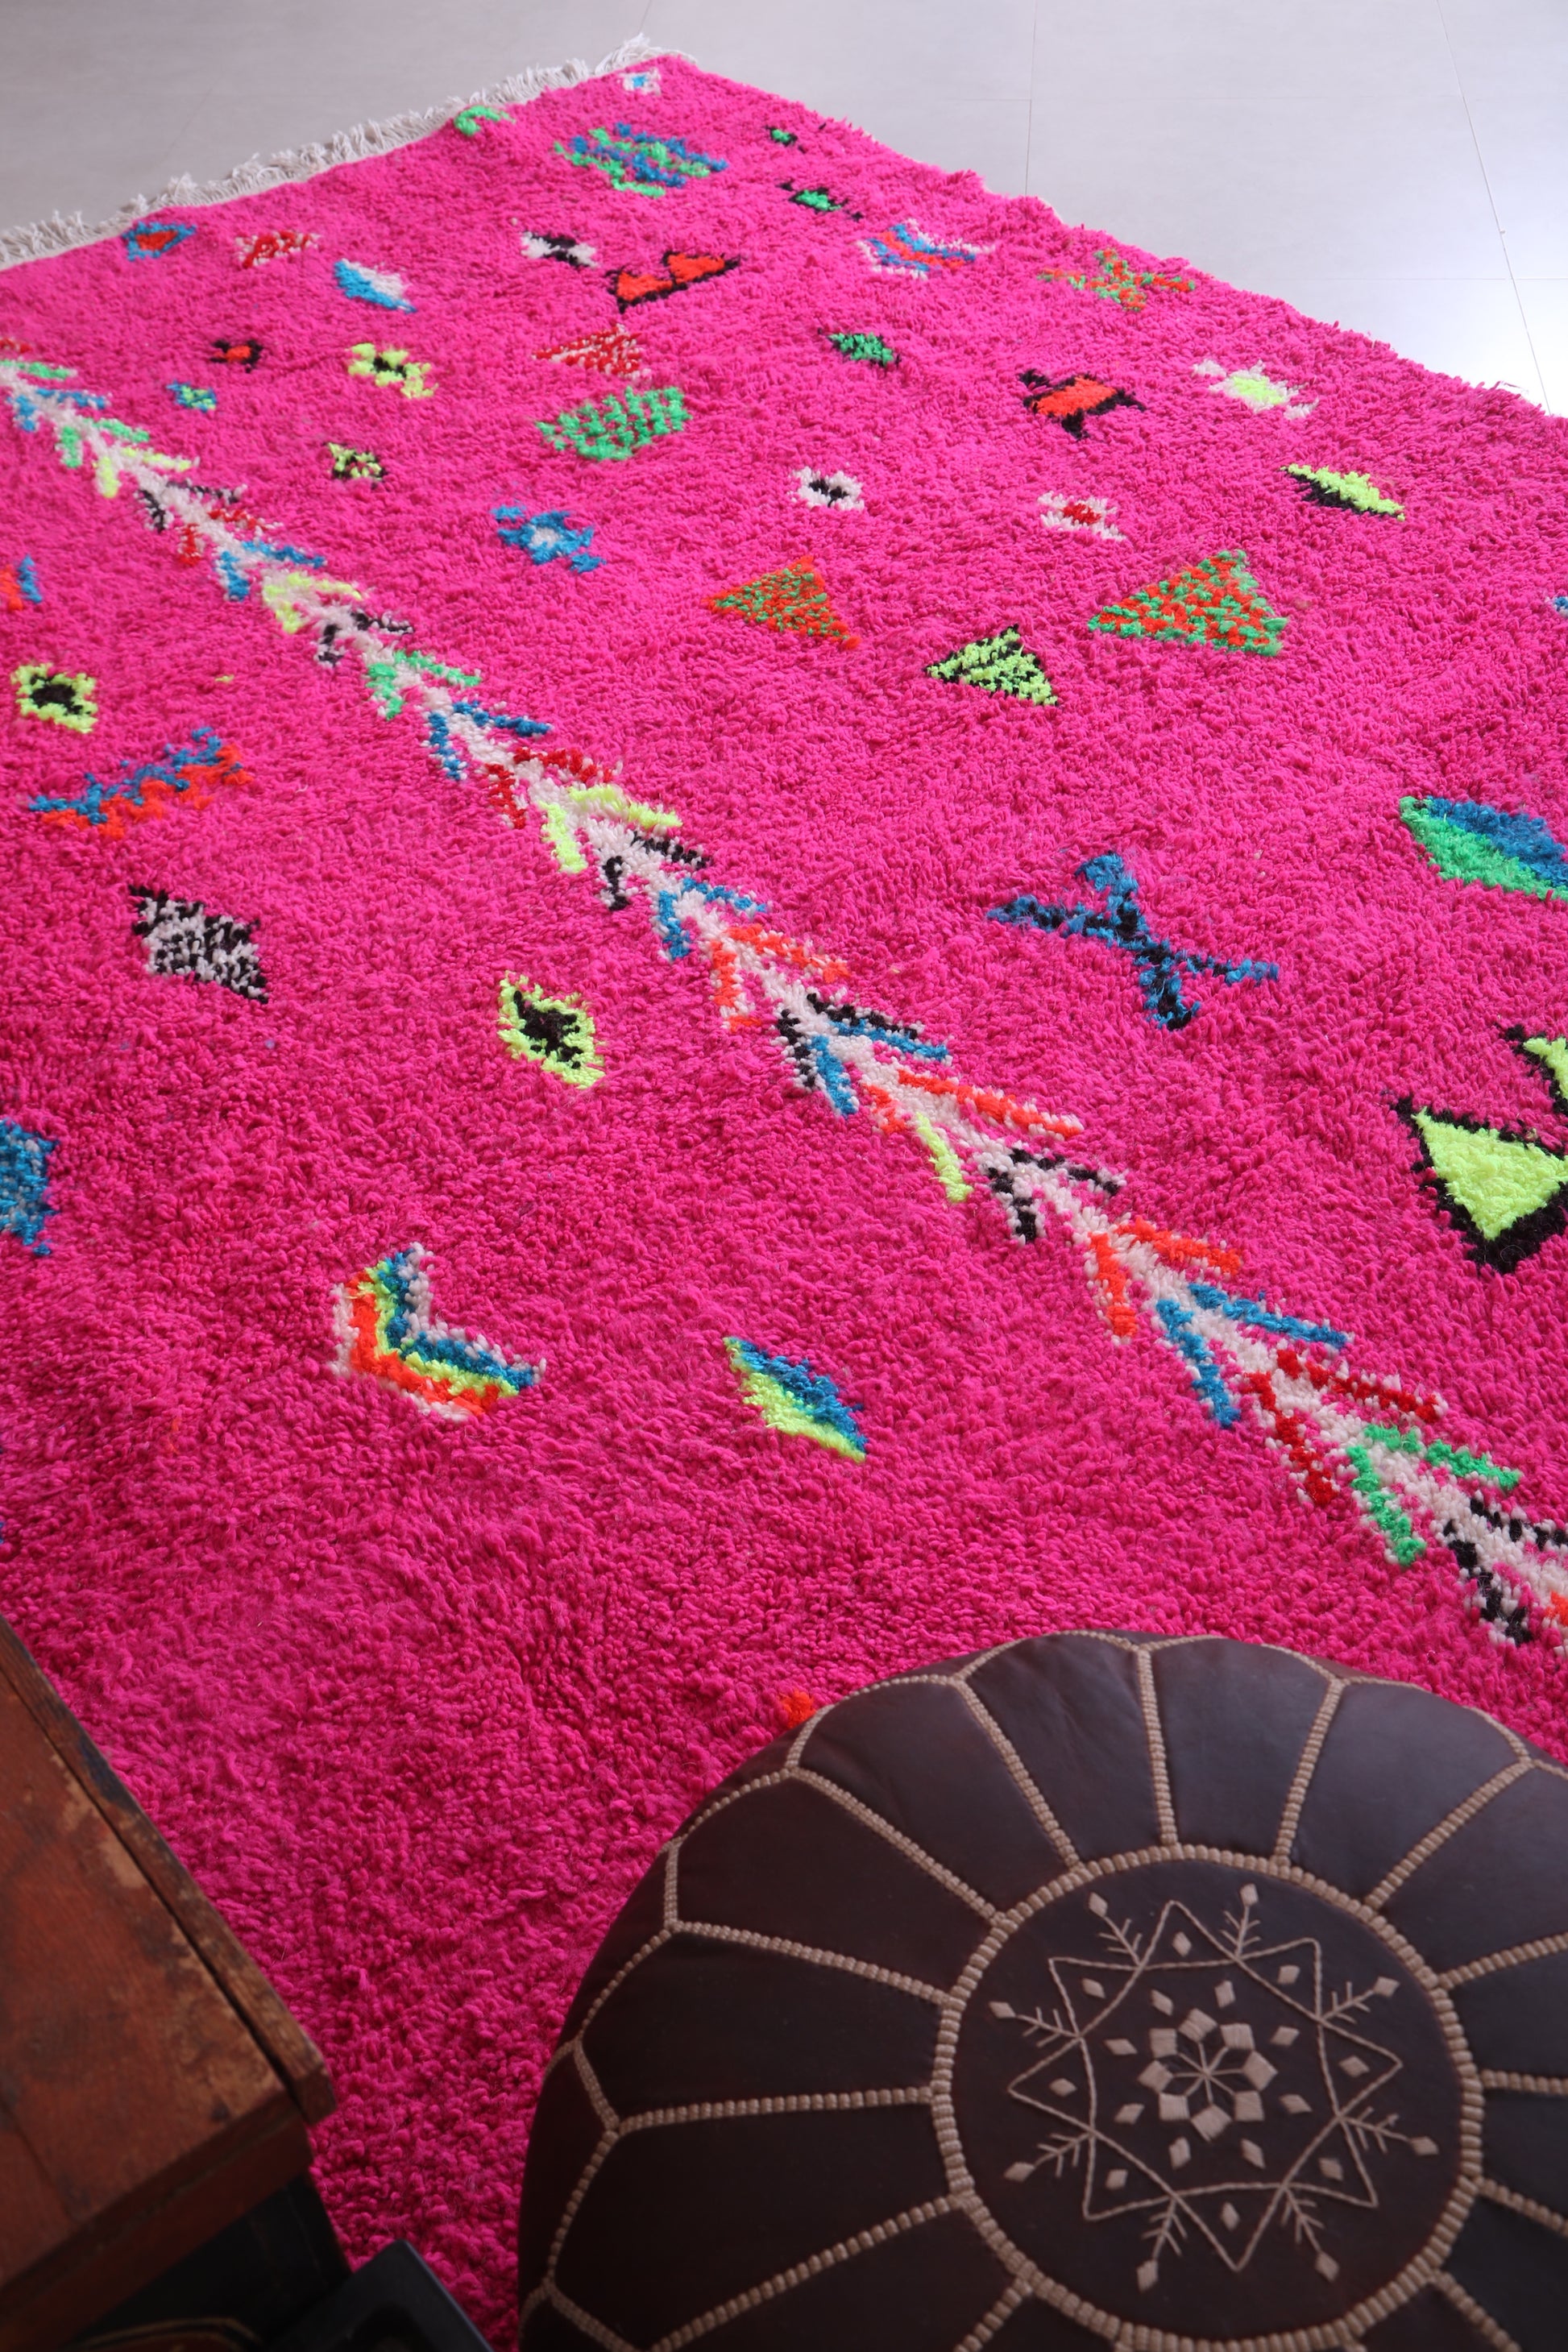 Moroccan handmade Pink rug - All wool Azilal Rug - Custom Rug